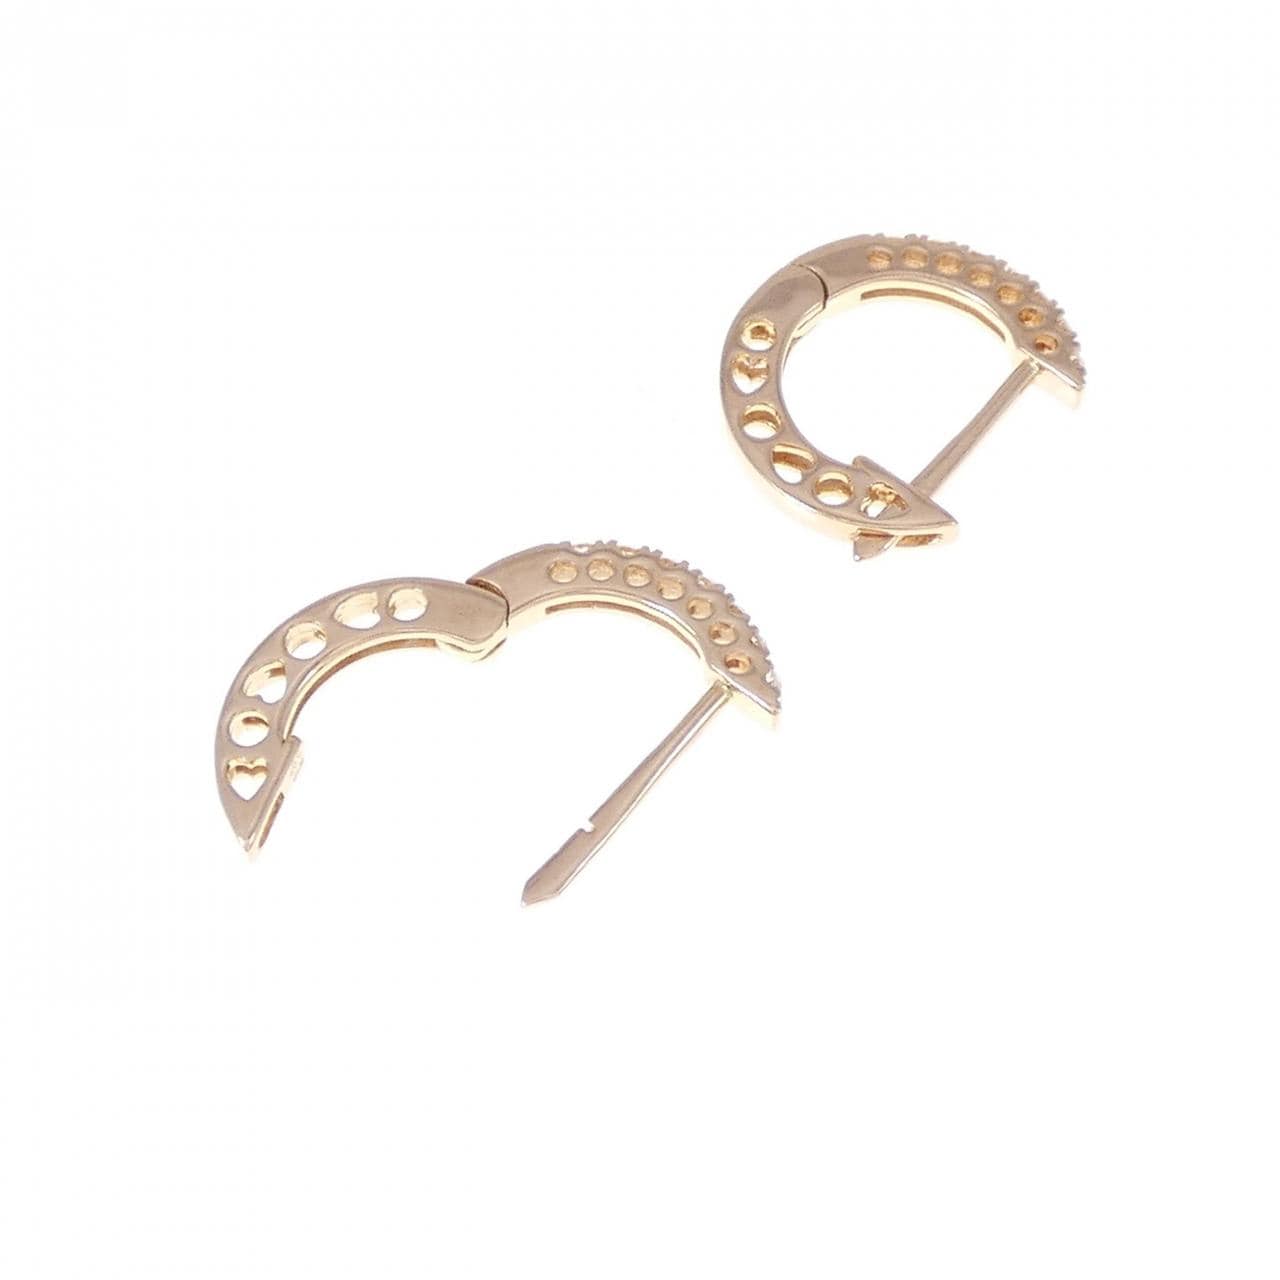 K18PG Diamond earrings 0.14CT